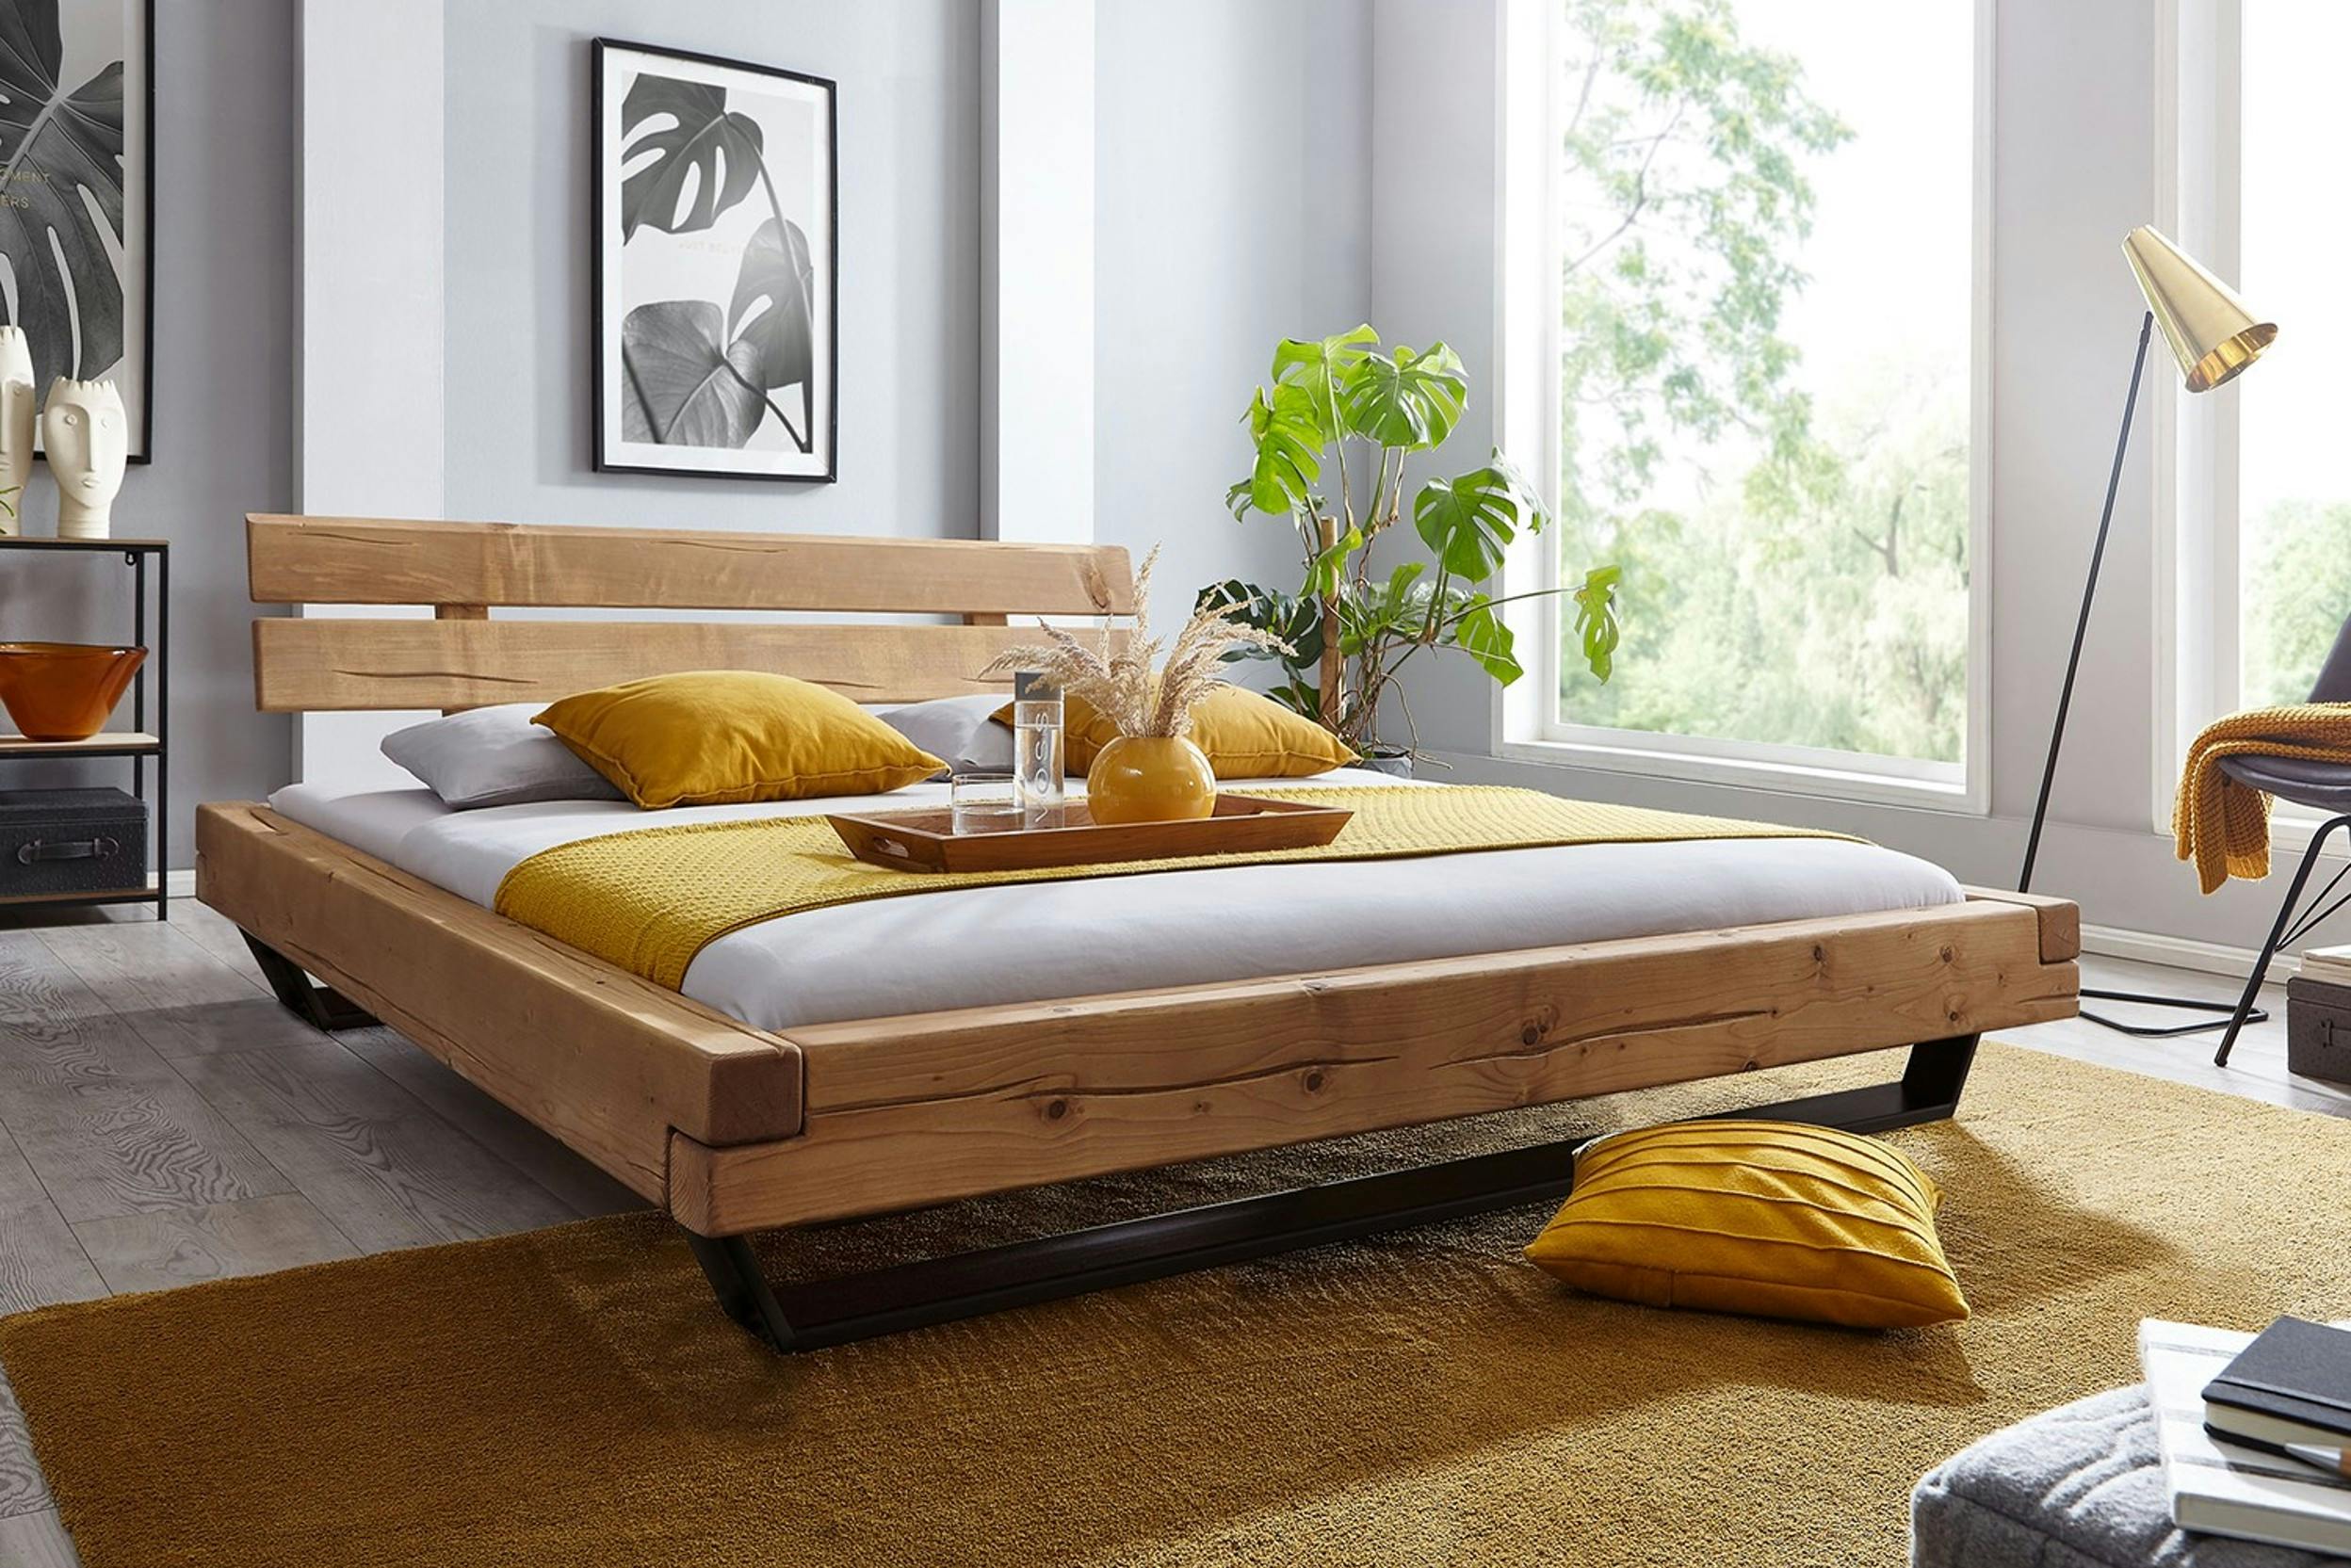 Modernes Holzbett mit gelber Bettwäsche und Frühstückstablett